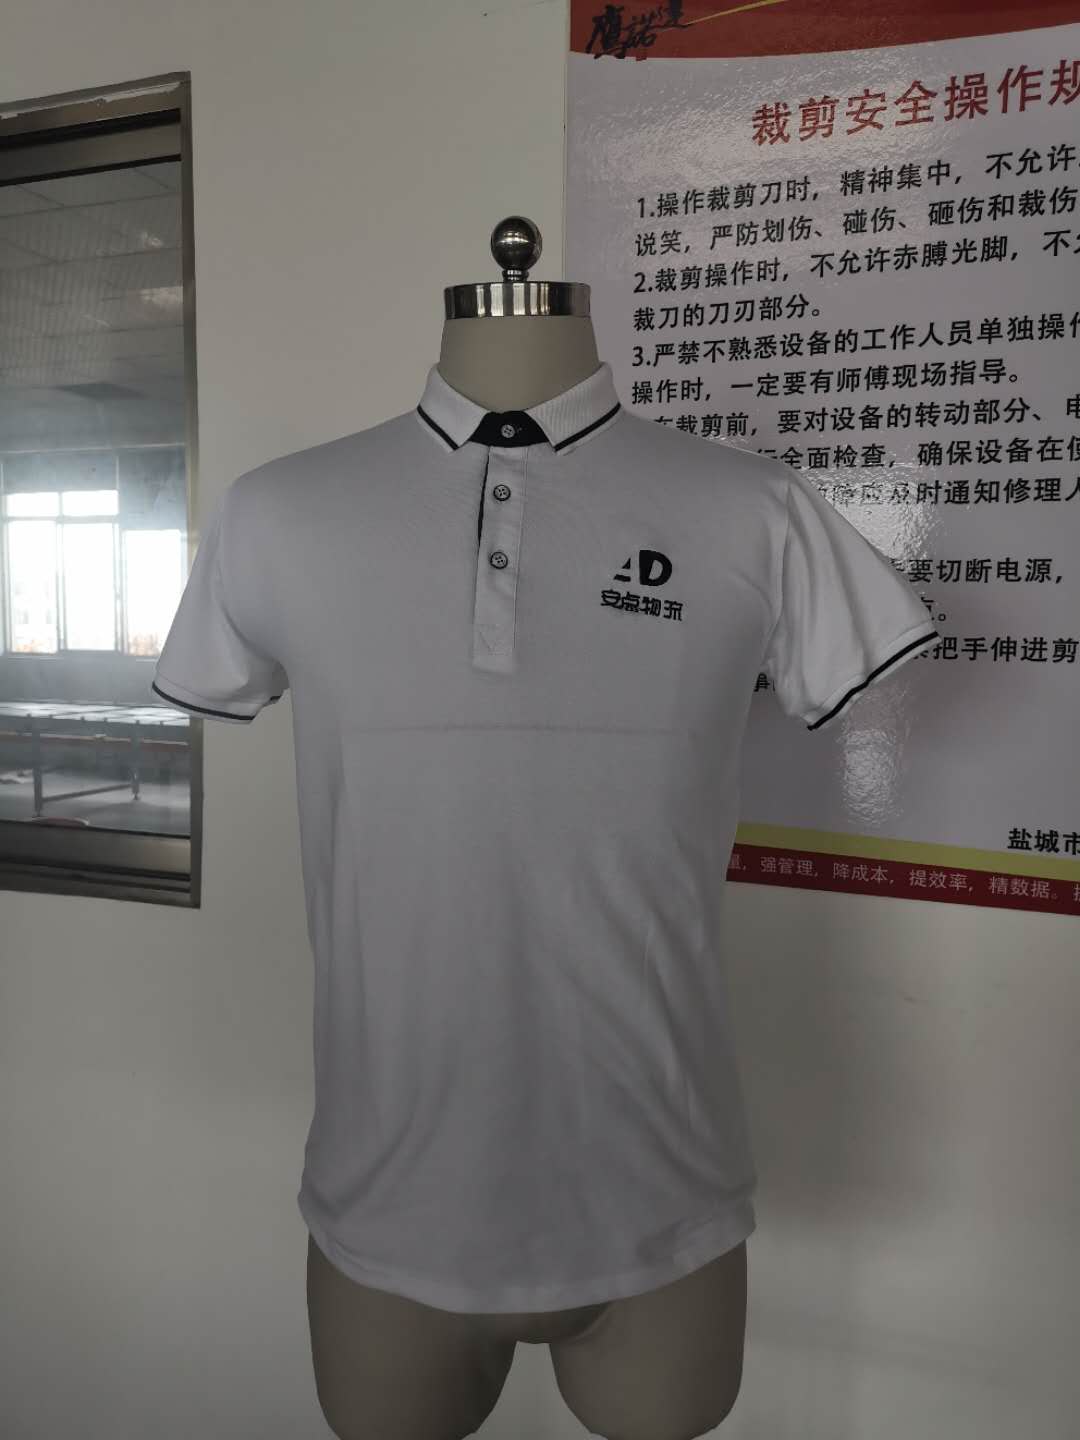 上海安点物流工作服t恤衫定制款式